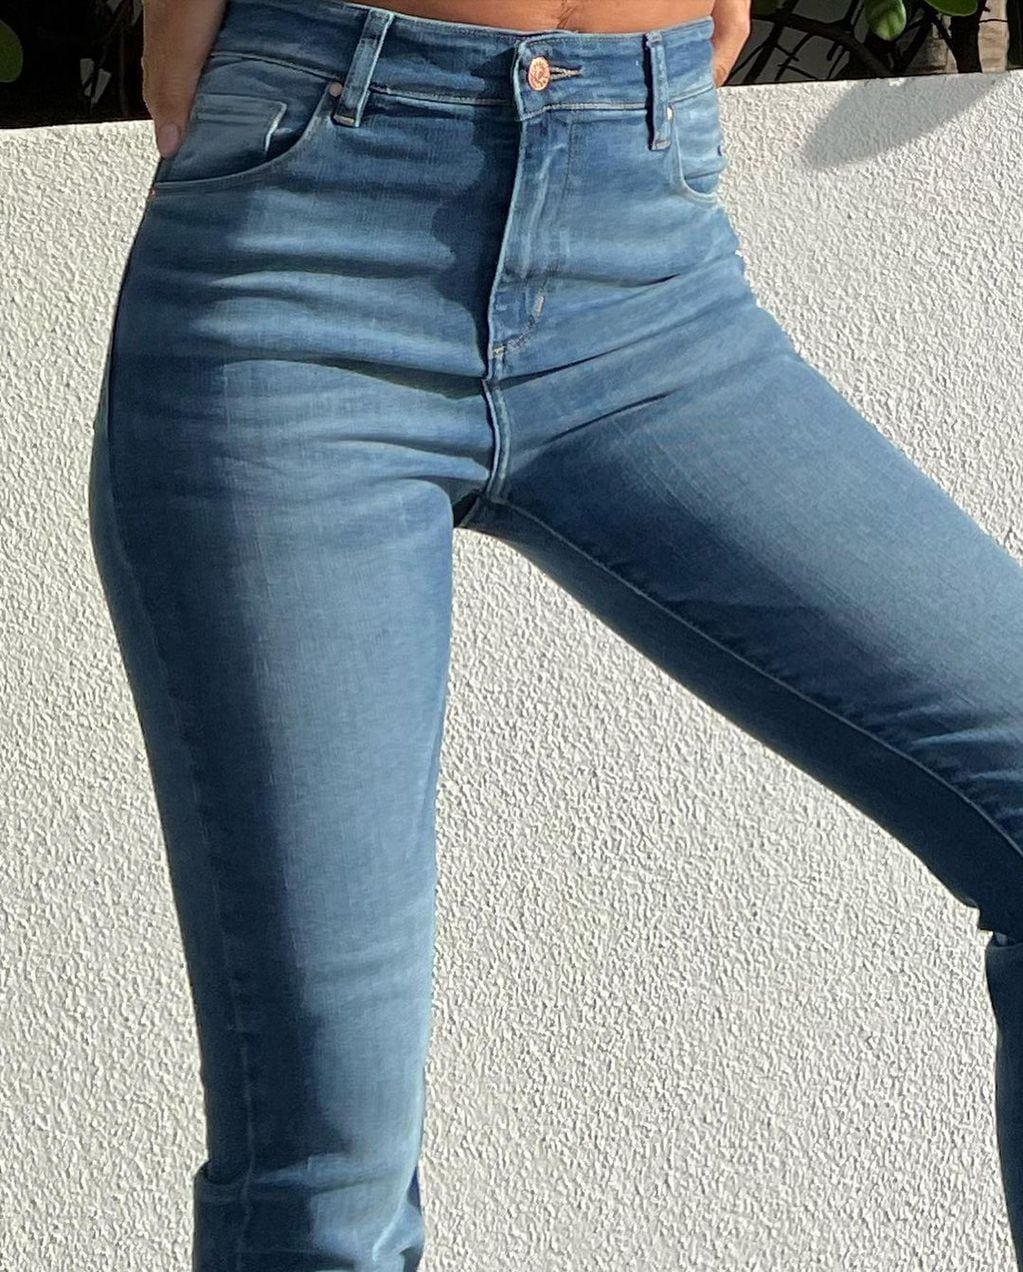 La modelo de 44 años aprovechó para promocionar los jeans que vestía.